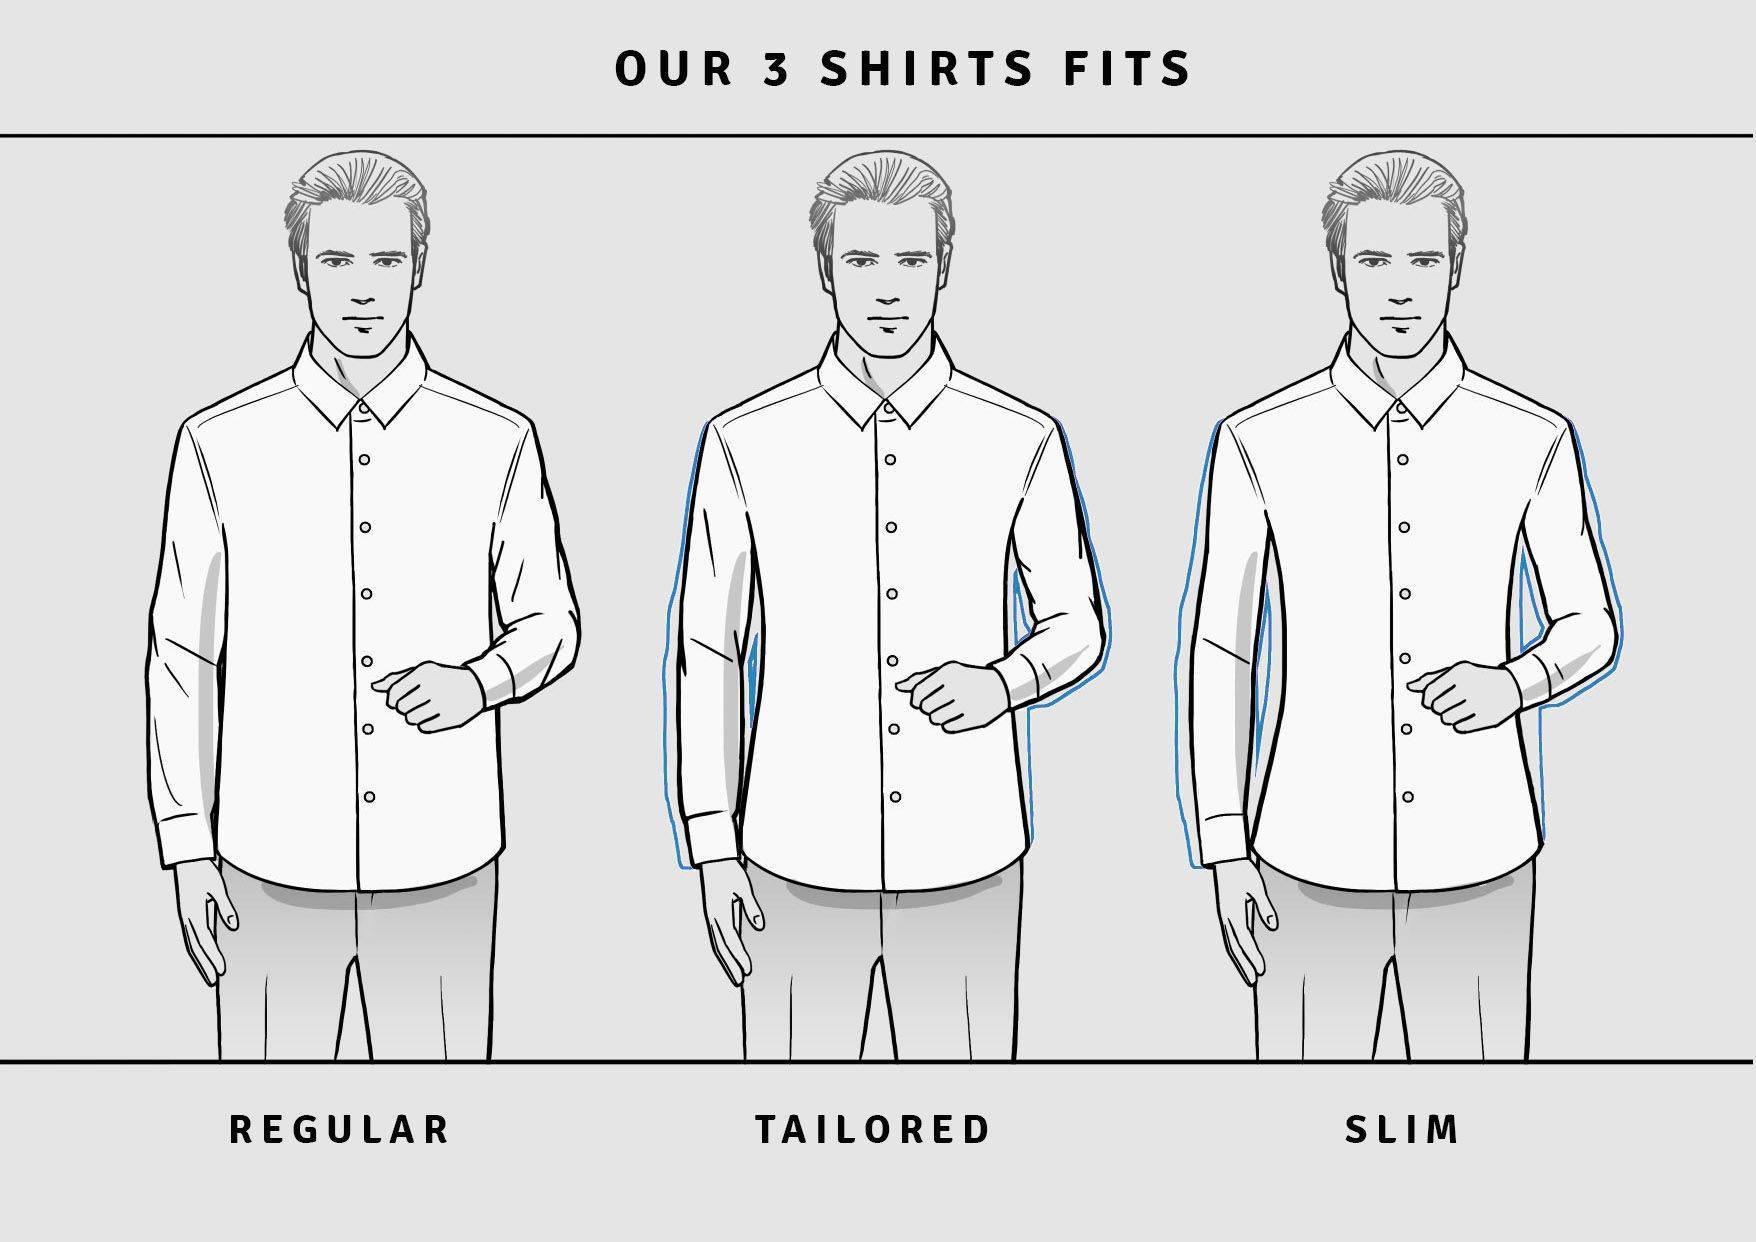 Размеры рубашек мужских. таблица соответствия